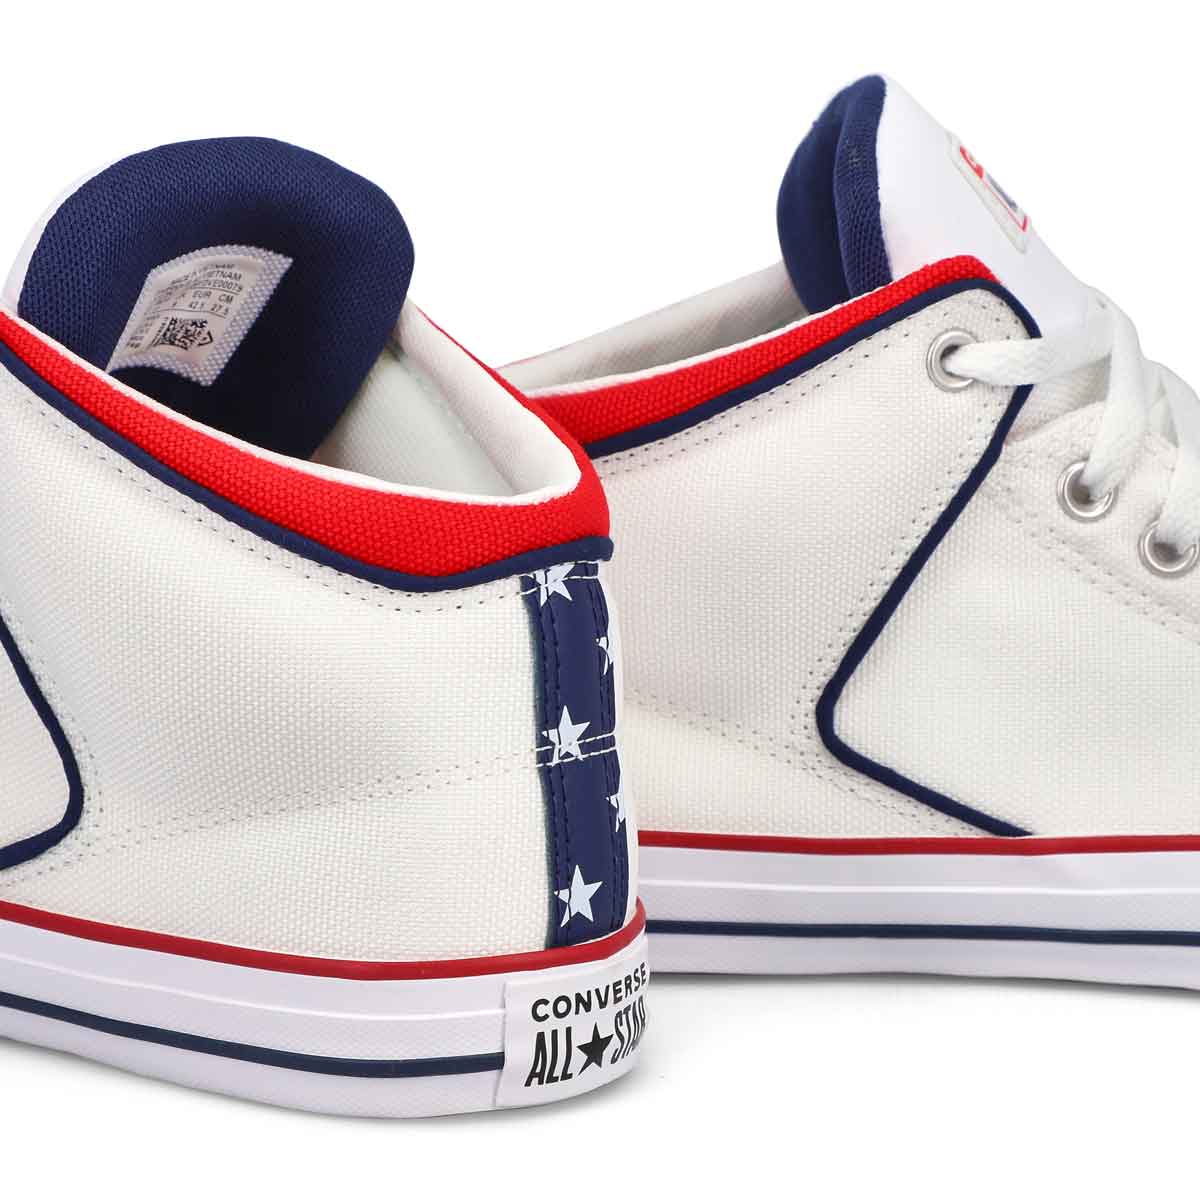 Men's All Star High Street Sneaker - White/Navy